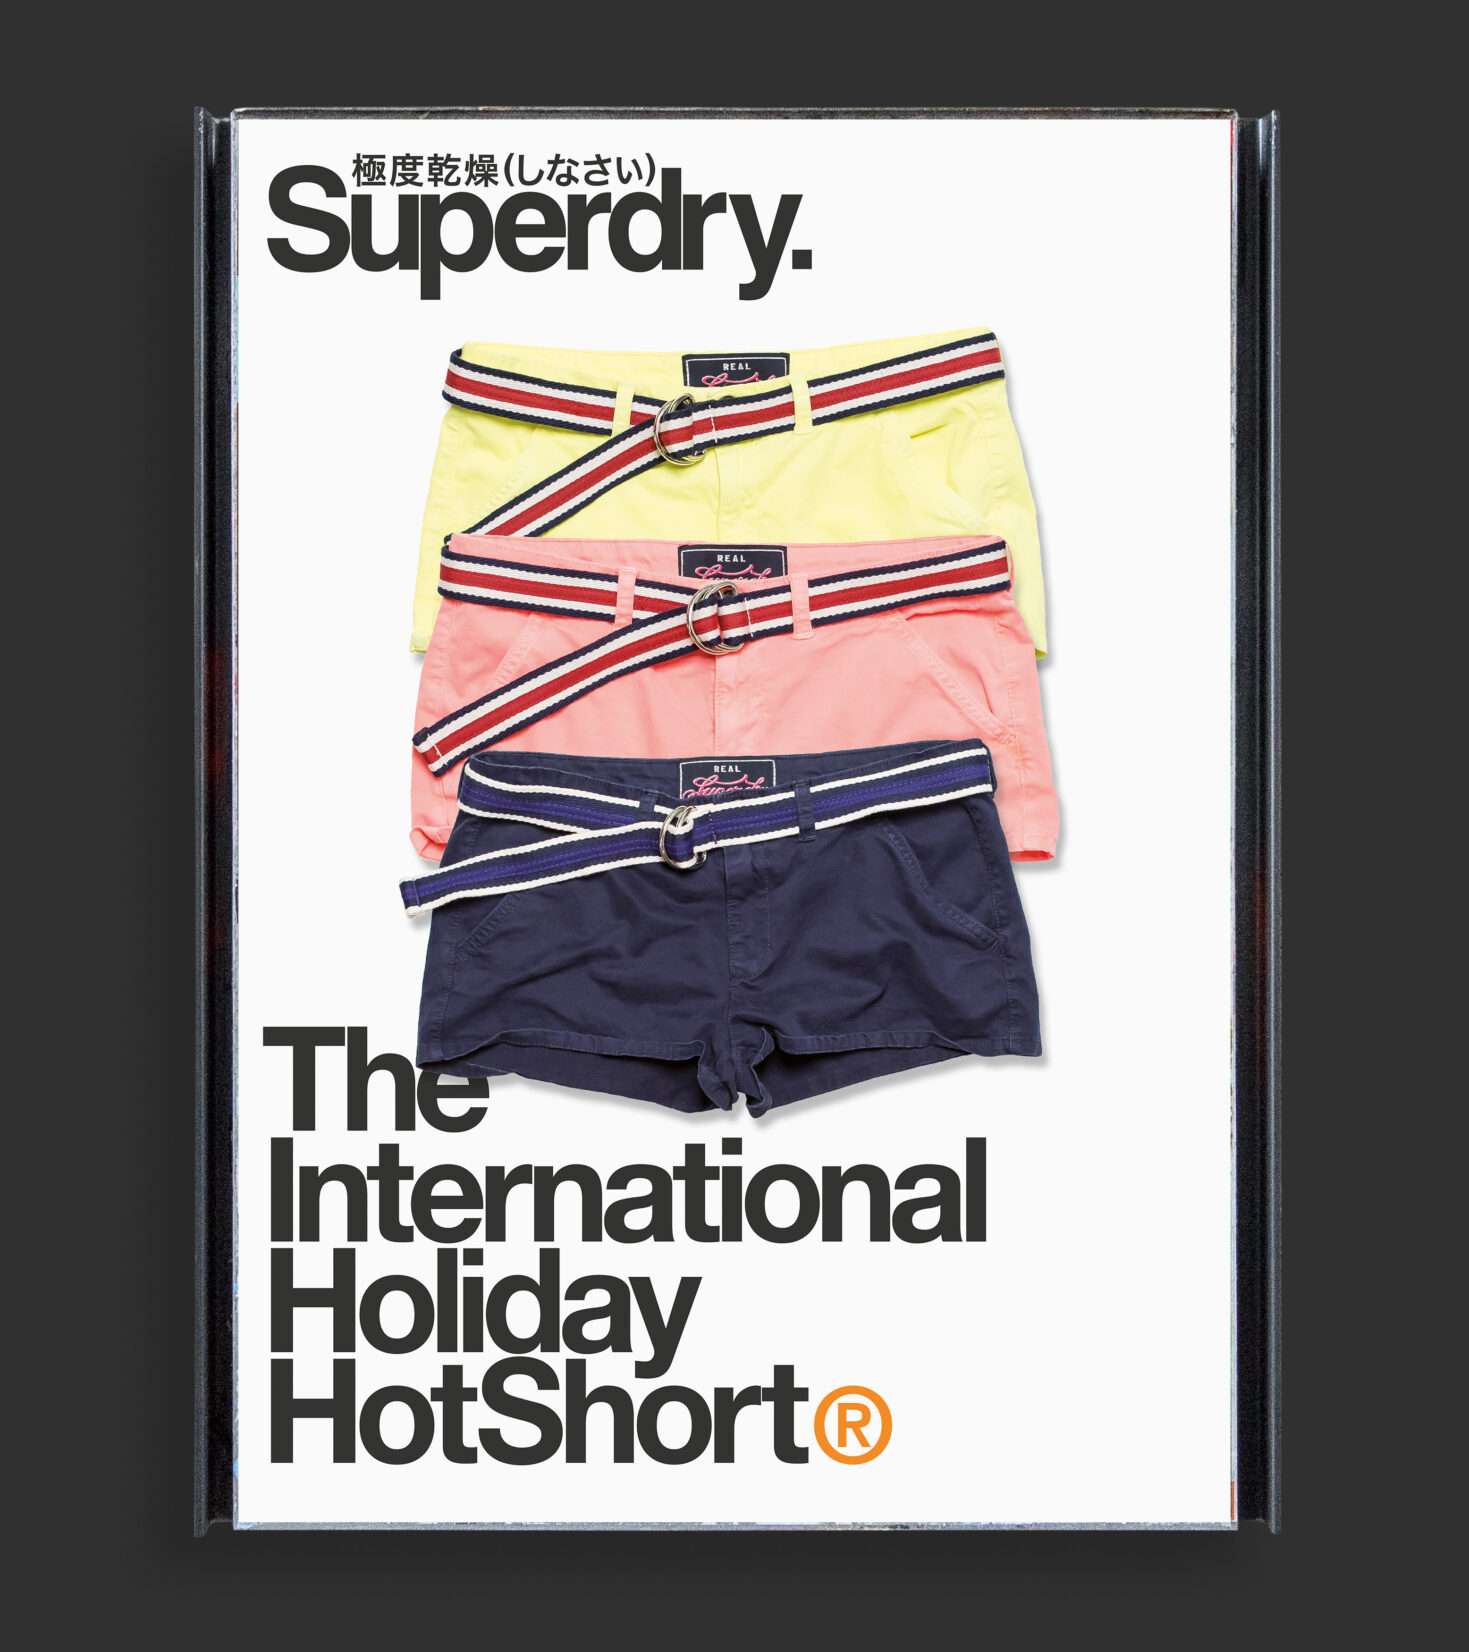 Von Grafikdesign Cueni gestaltetes Werbeplakat mit Shorts.